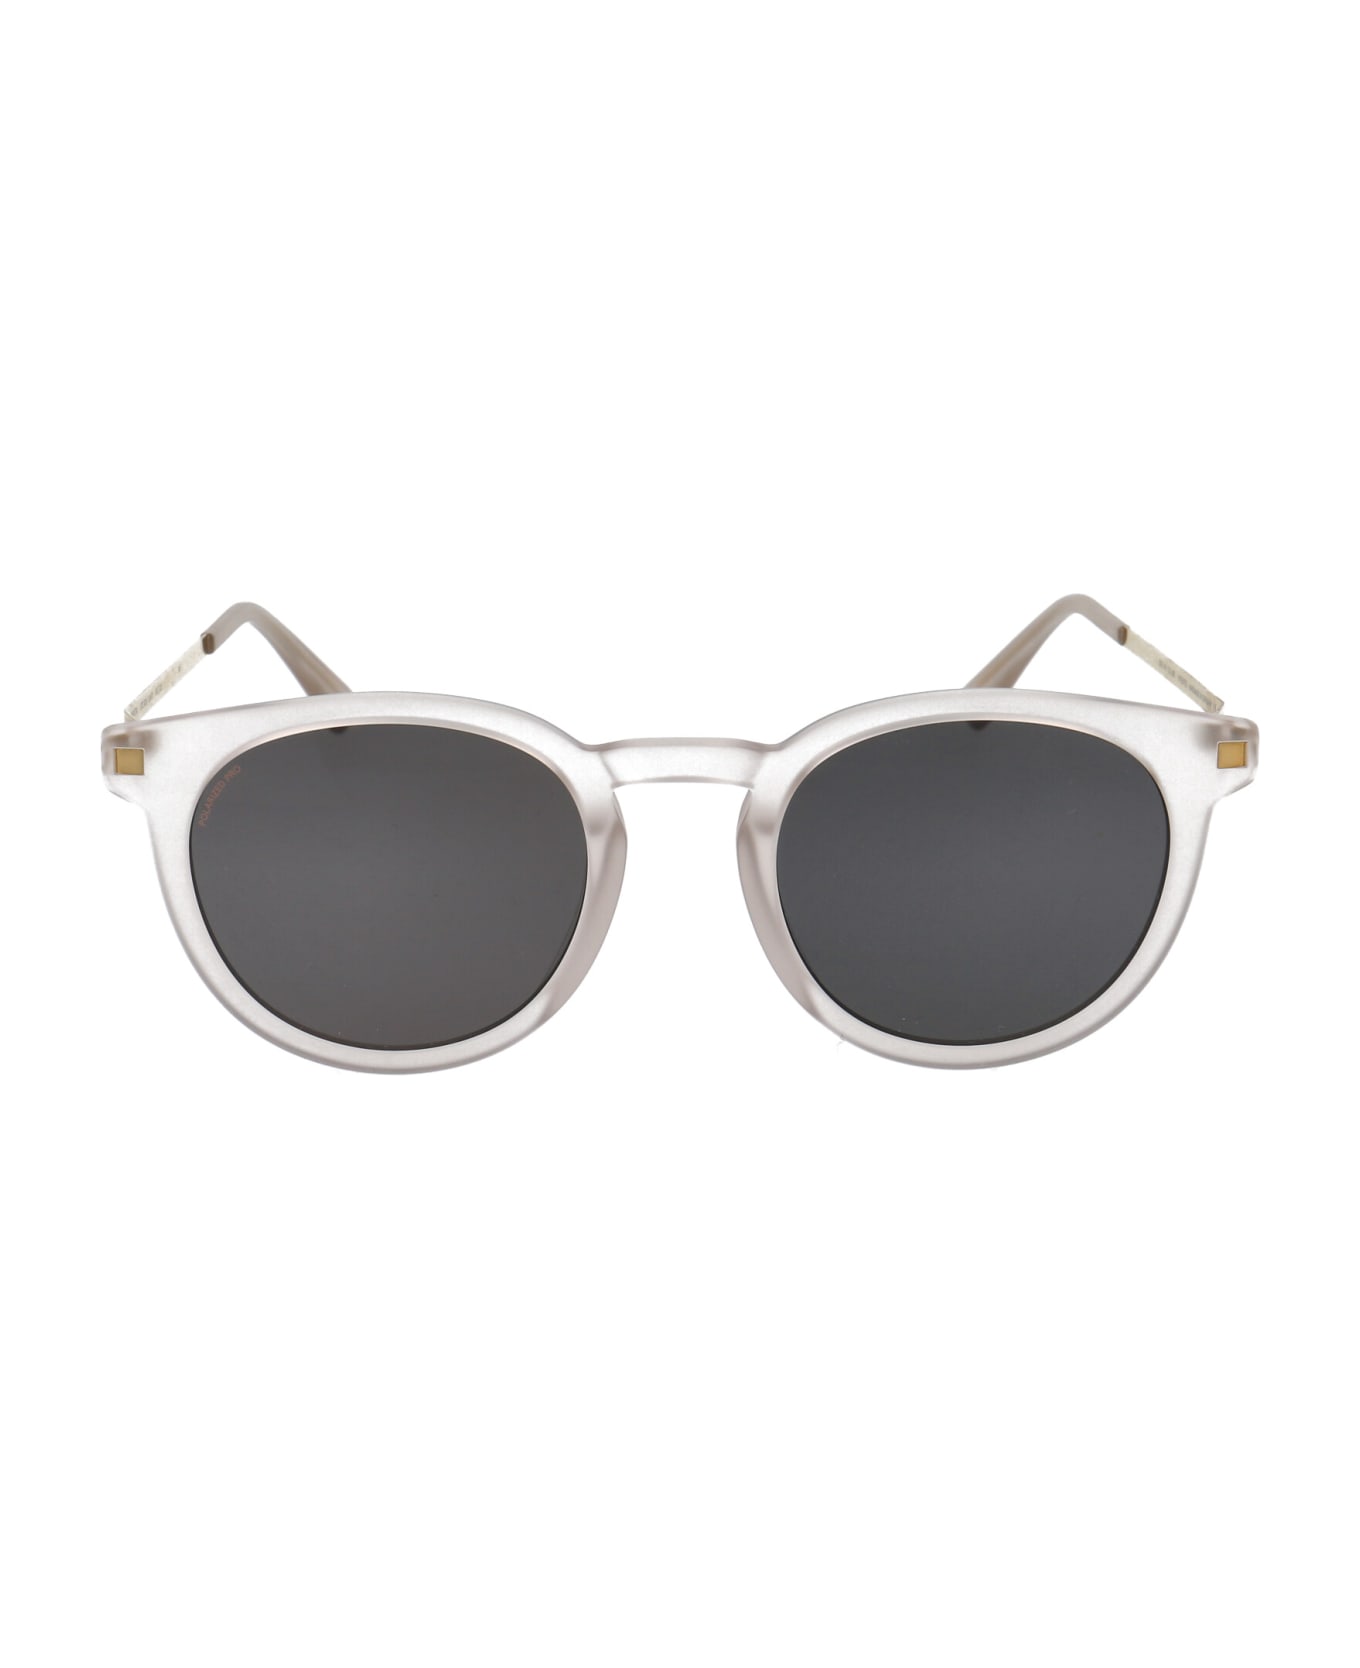 Mykita Lahti Sunglasses - 883 C101-Matte Champagne/Glossy Go Polarized Pro Hi-Con